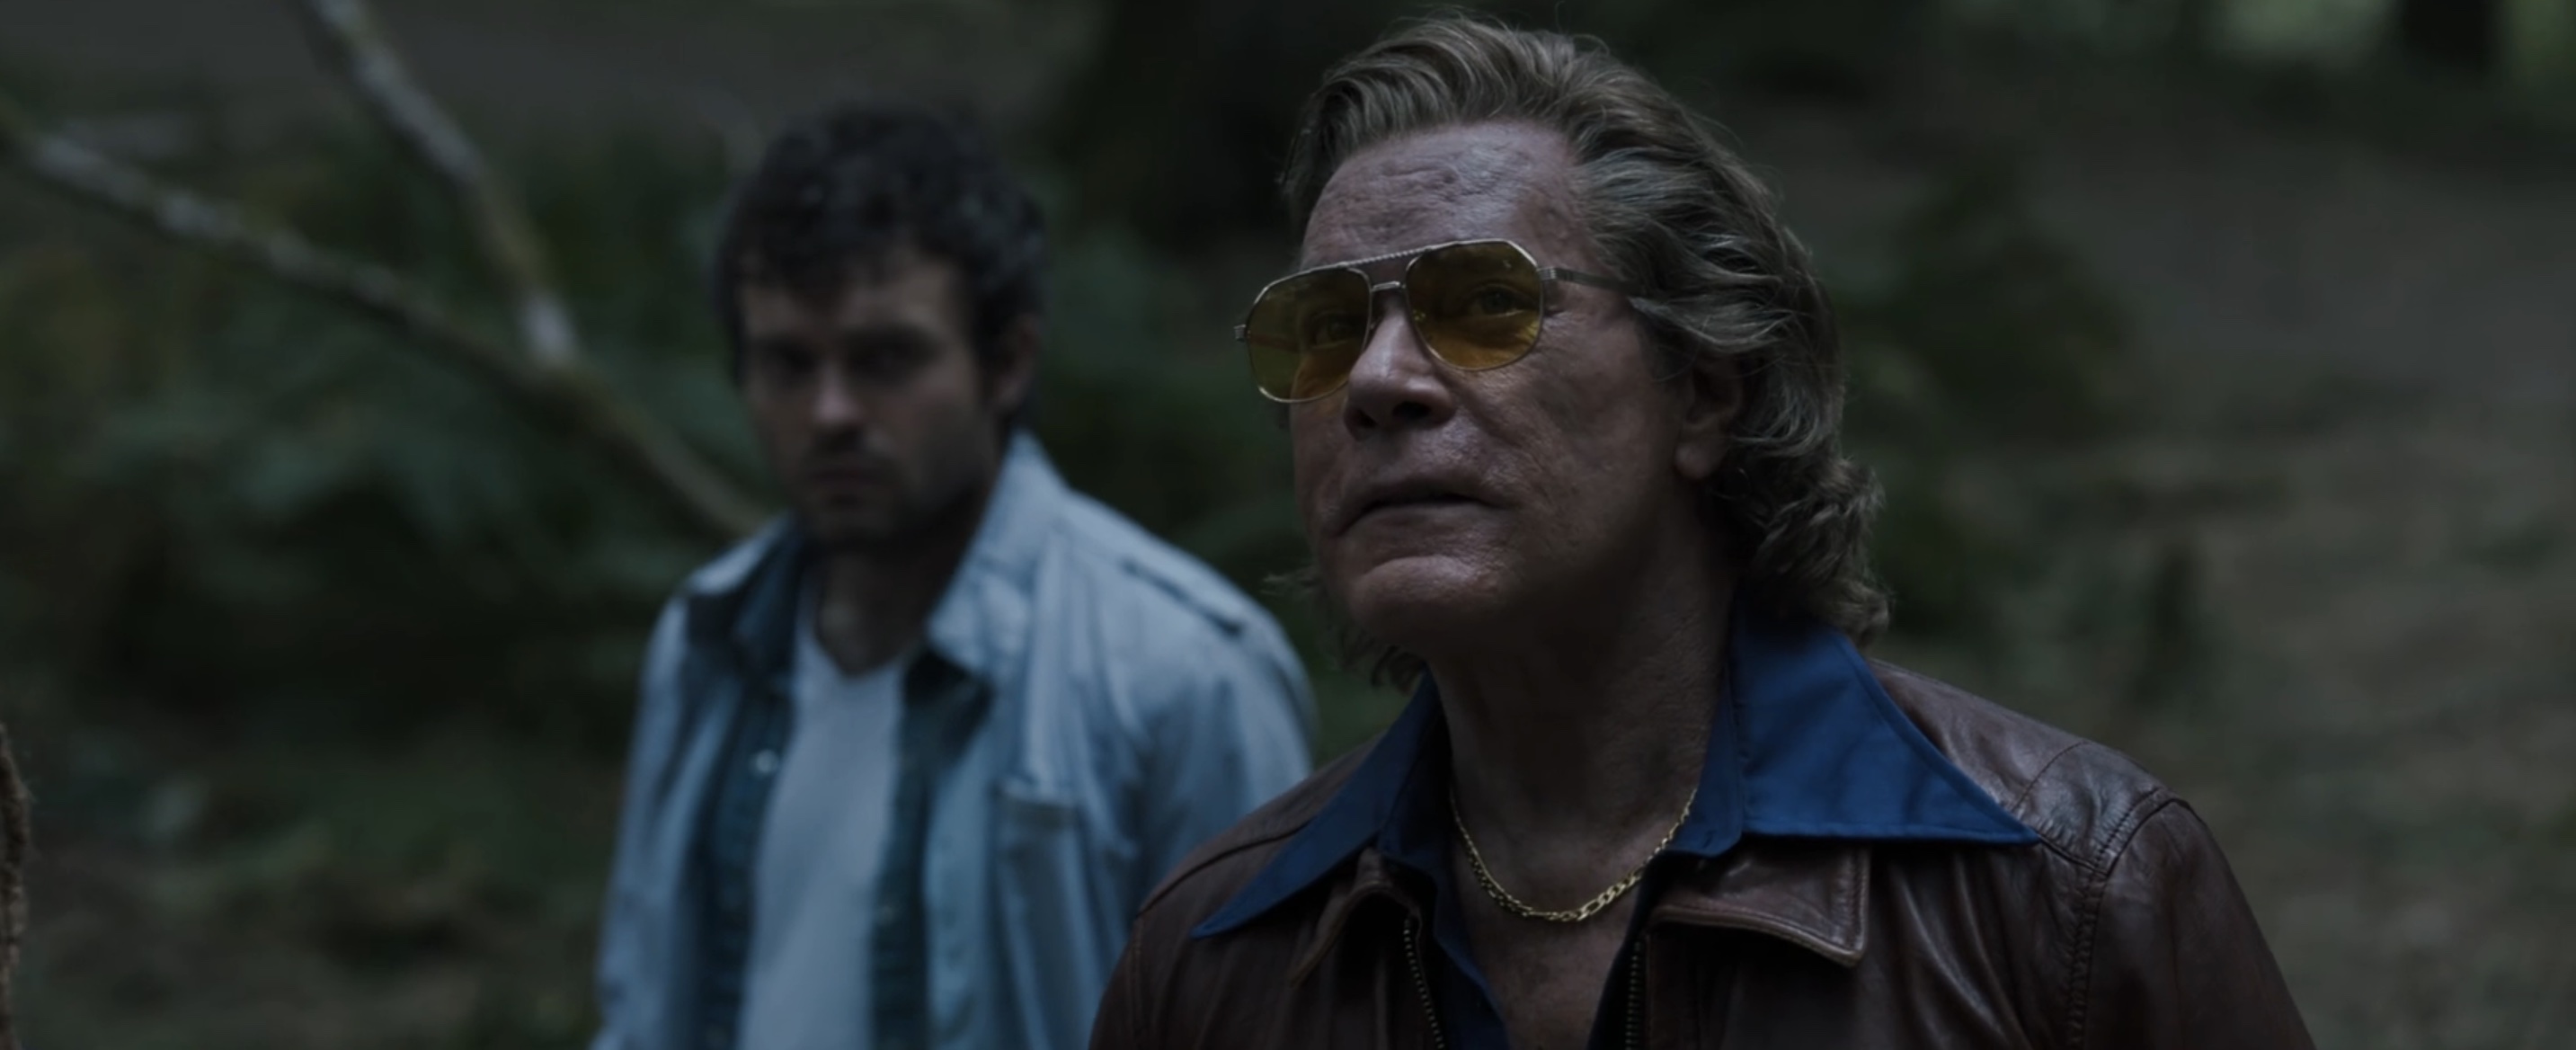 Cocaine Bear Cast on Peacock and Amazon - Ray Liotta as Syd